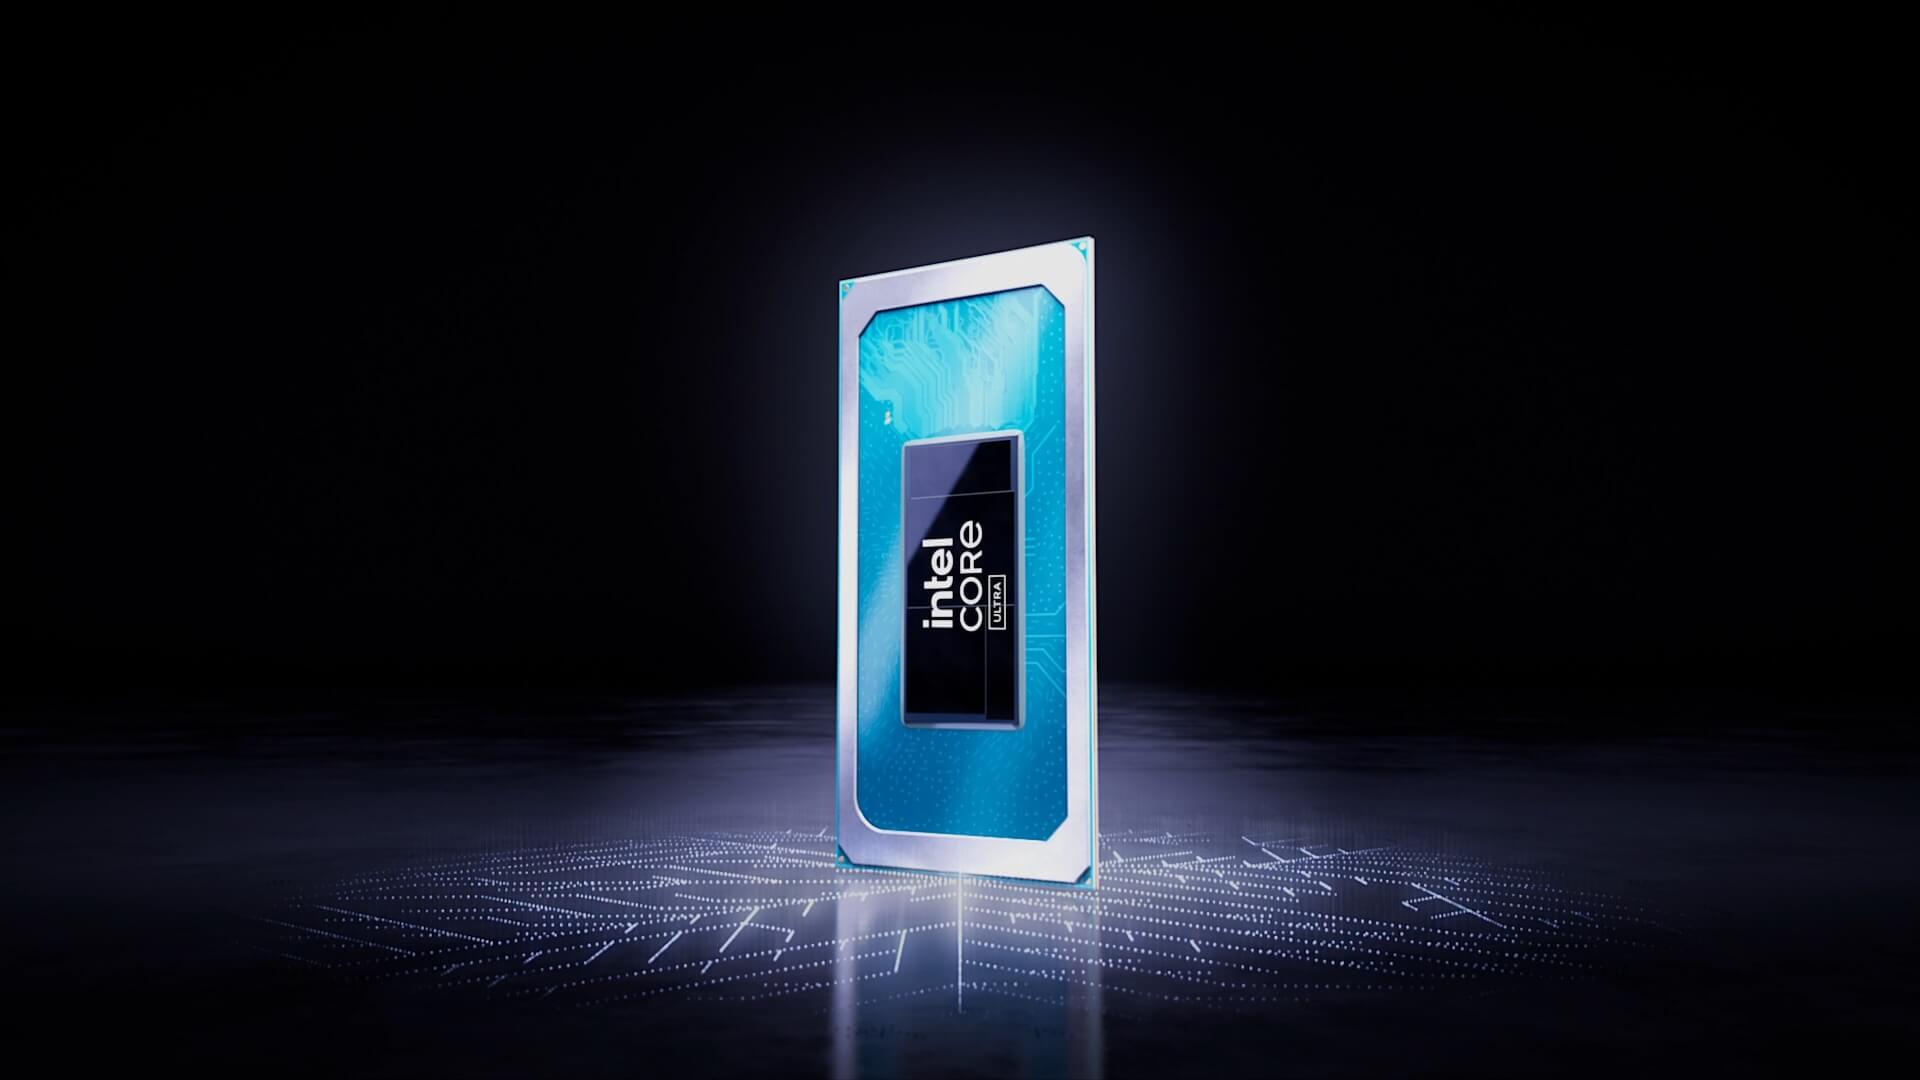 Intel Core Ultra